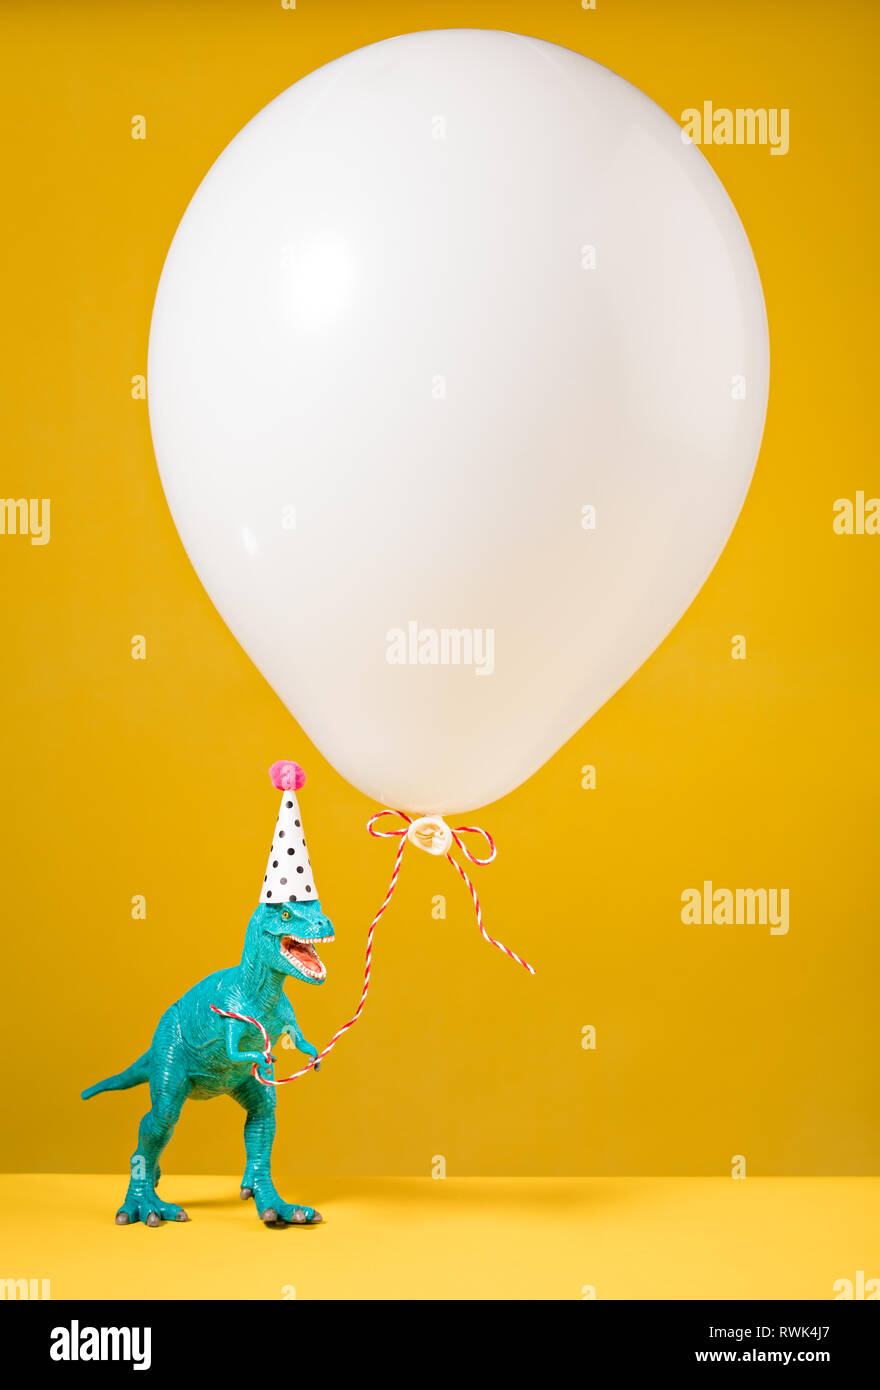 Teal Dinosaurier Spielzeug mit geburtstagsmütze Holding ein weisser Ballon auf gelbem Hintergrund. Stockfoto